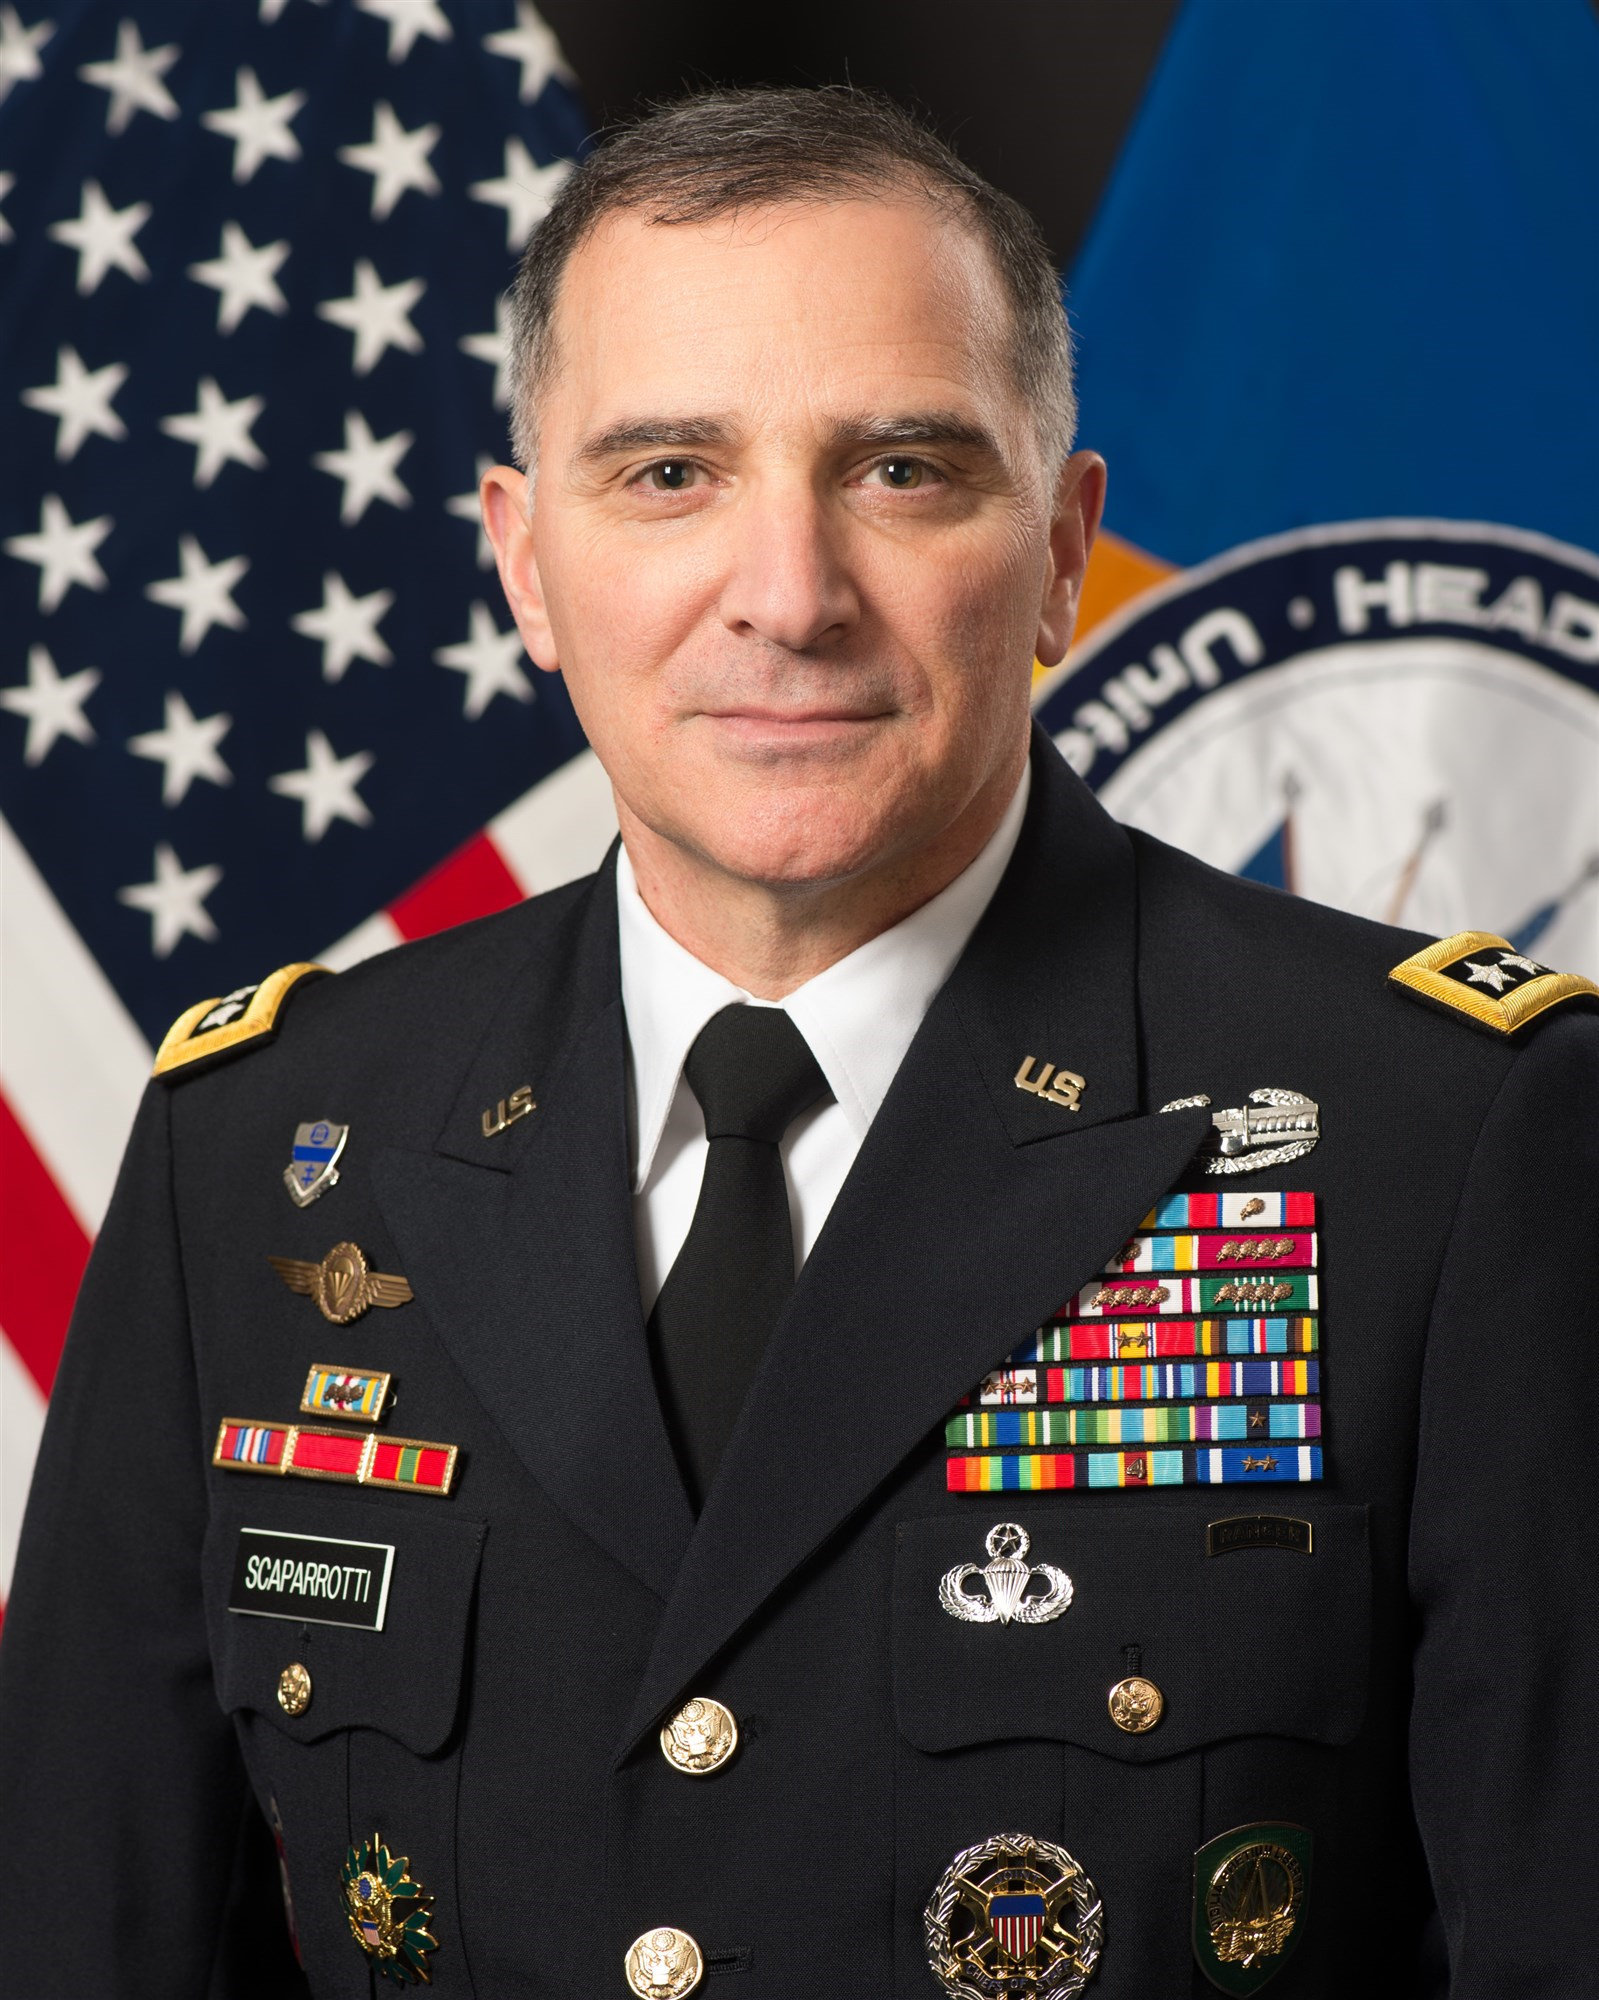 Gen. Curtis M. Scaparrotti, USEUCOM